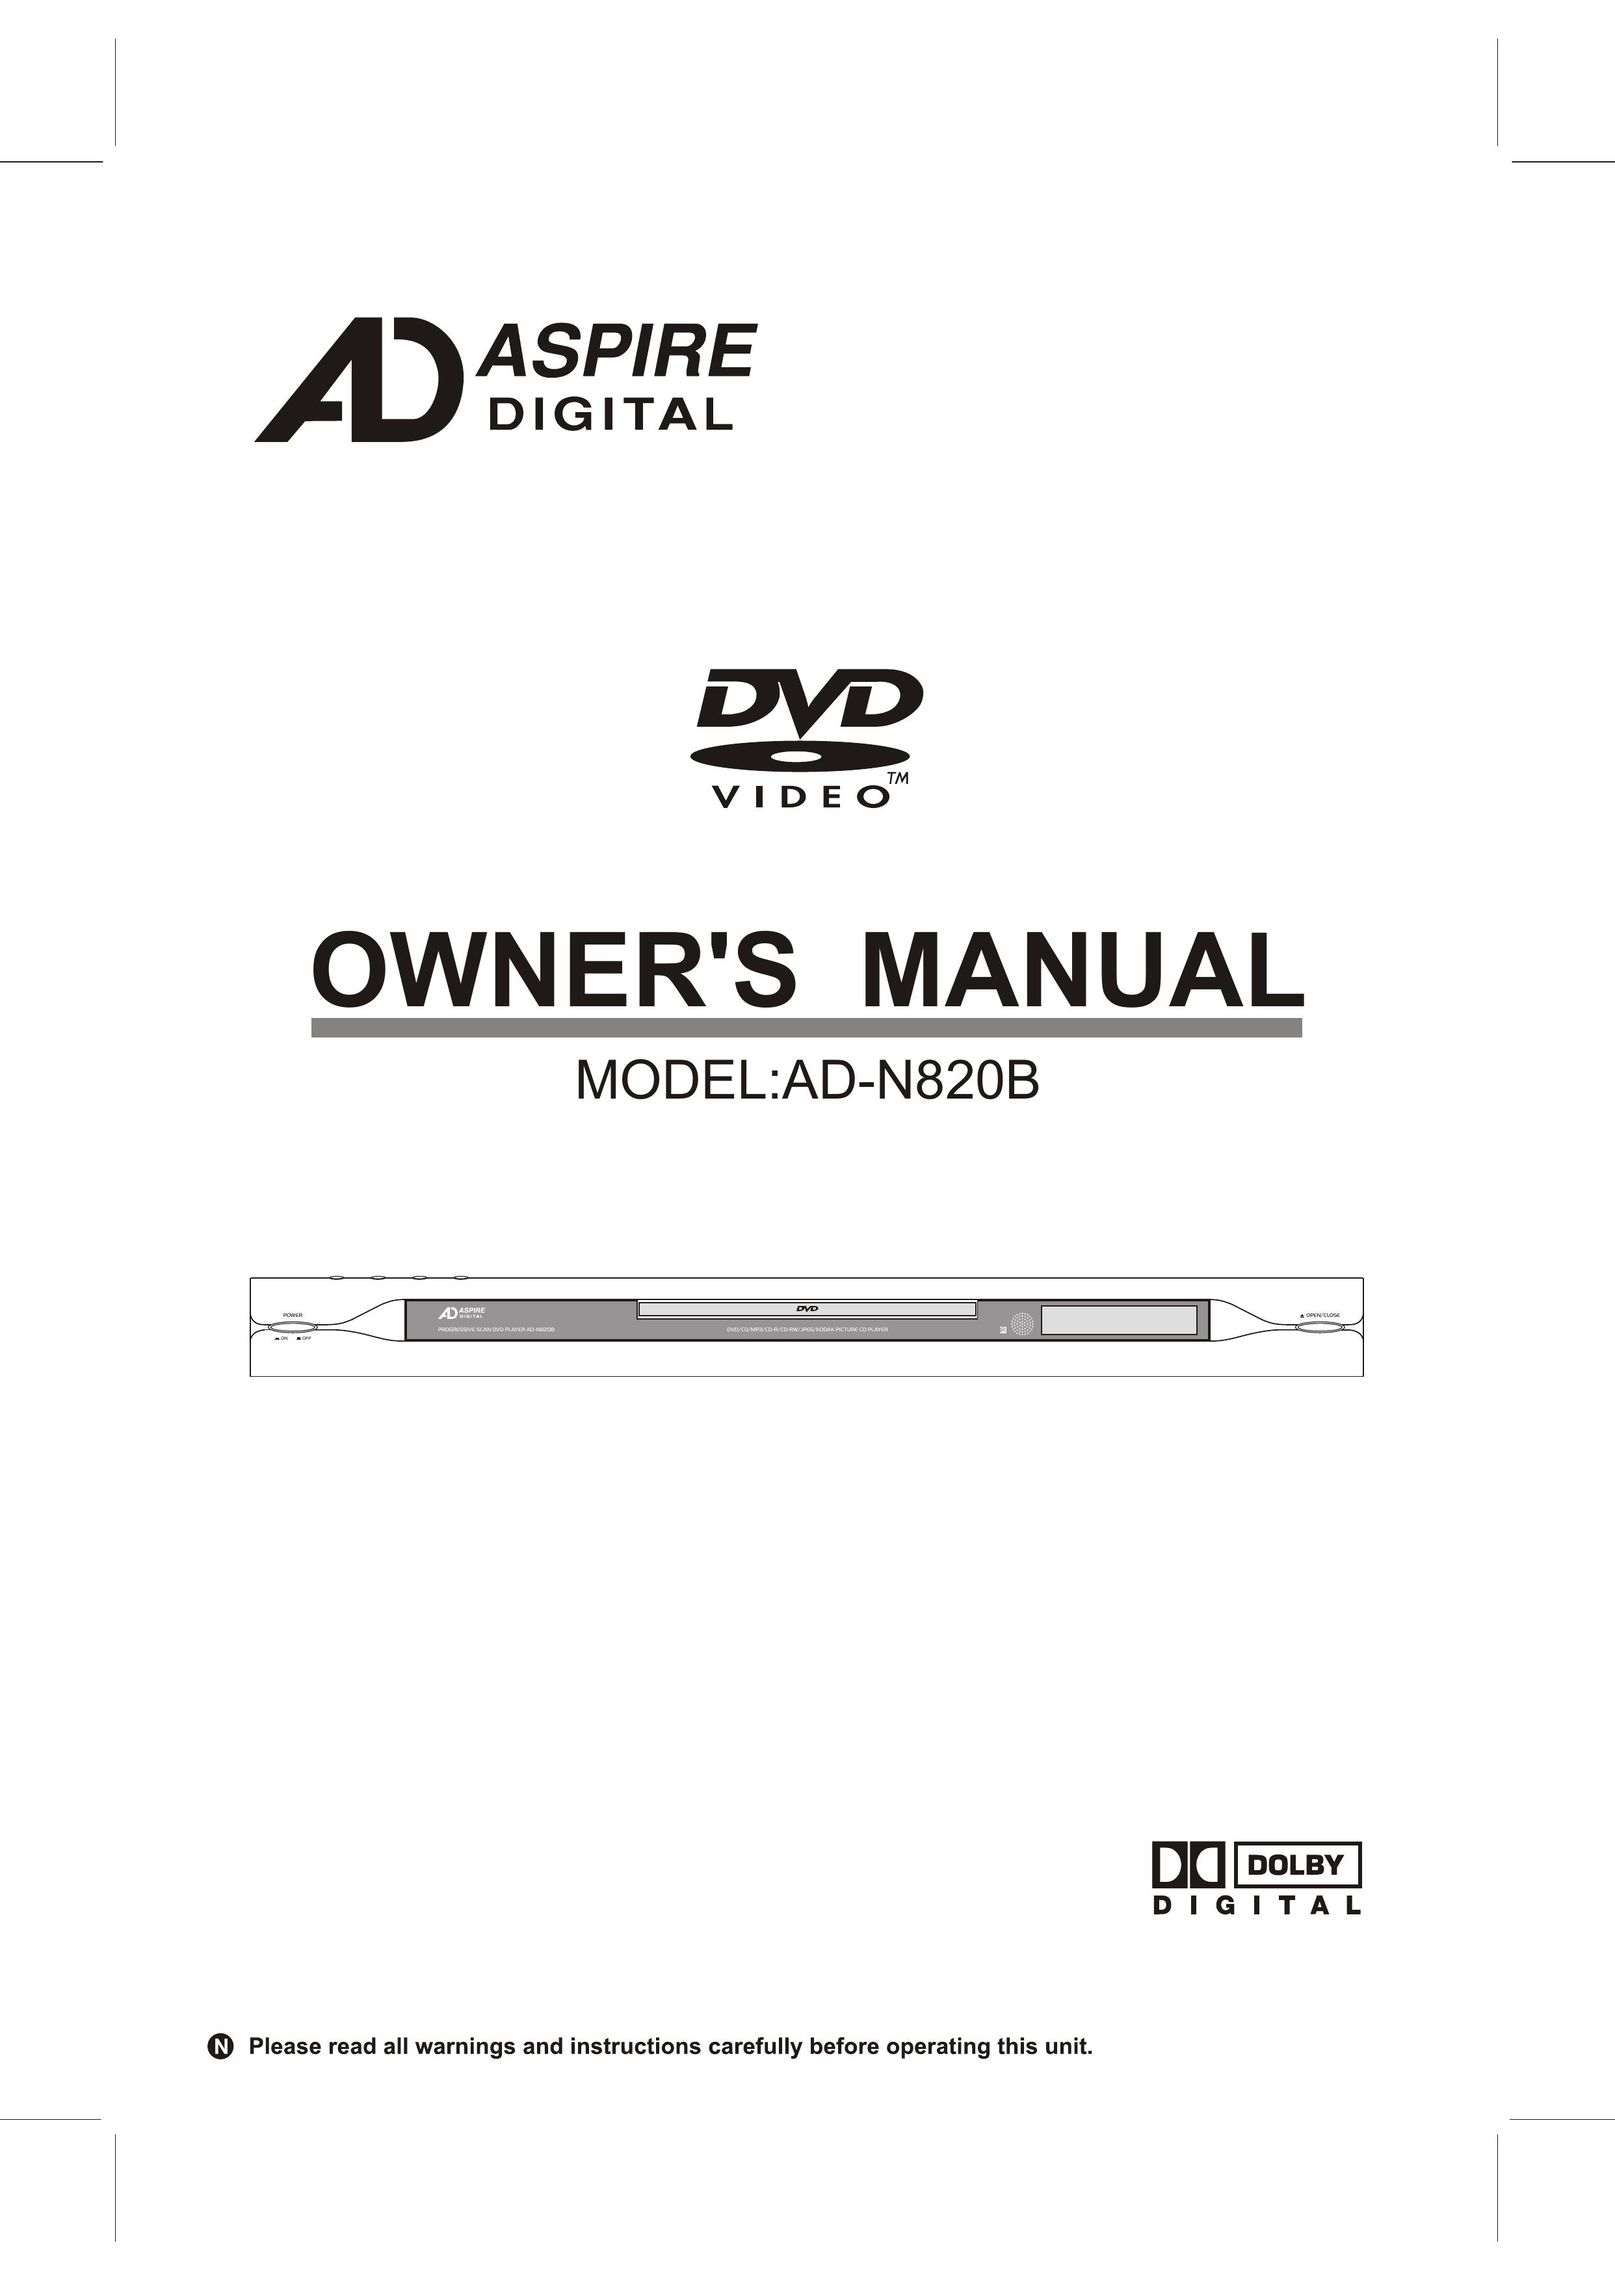 Aspire Digital AD-N820B DVD Player User Manual